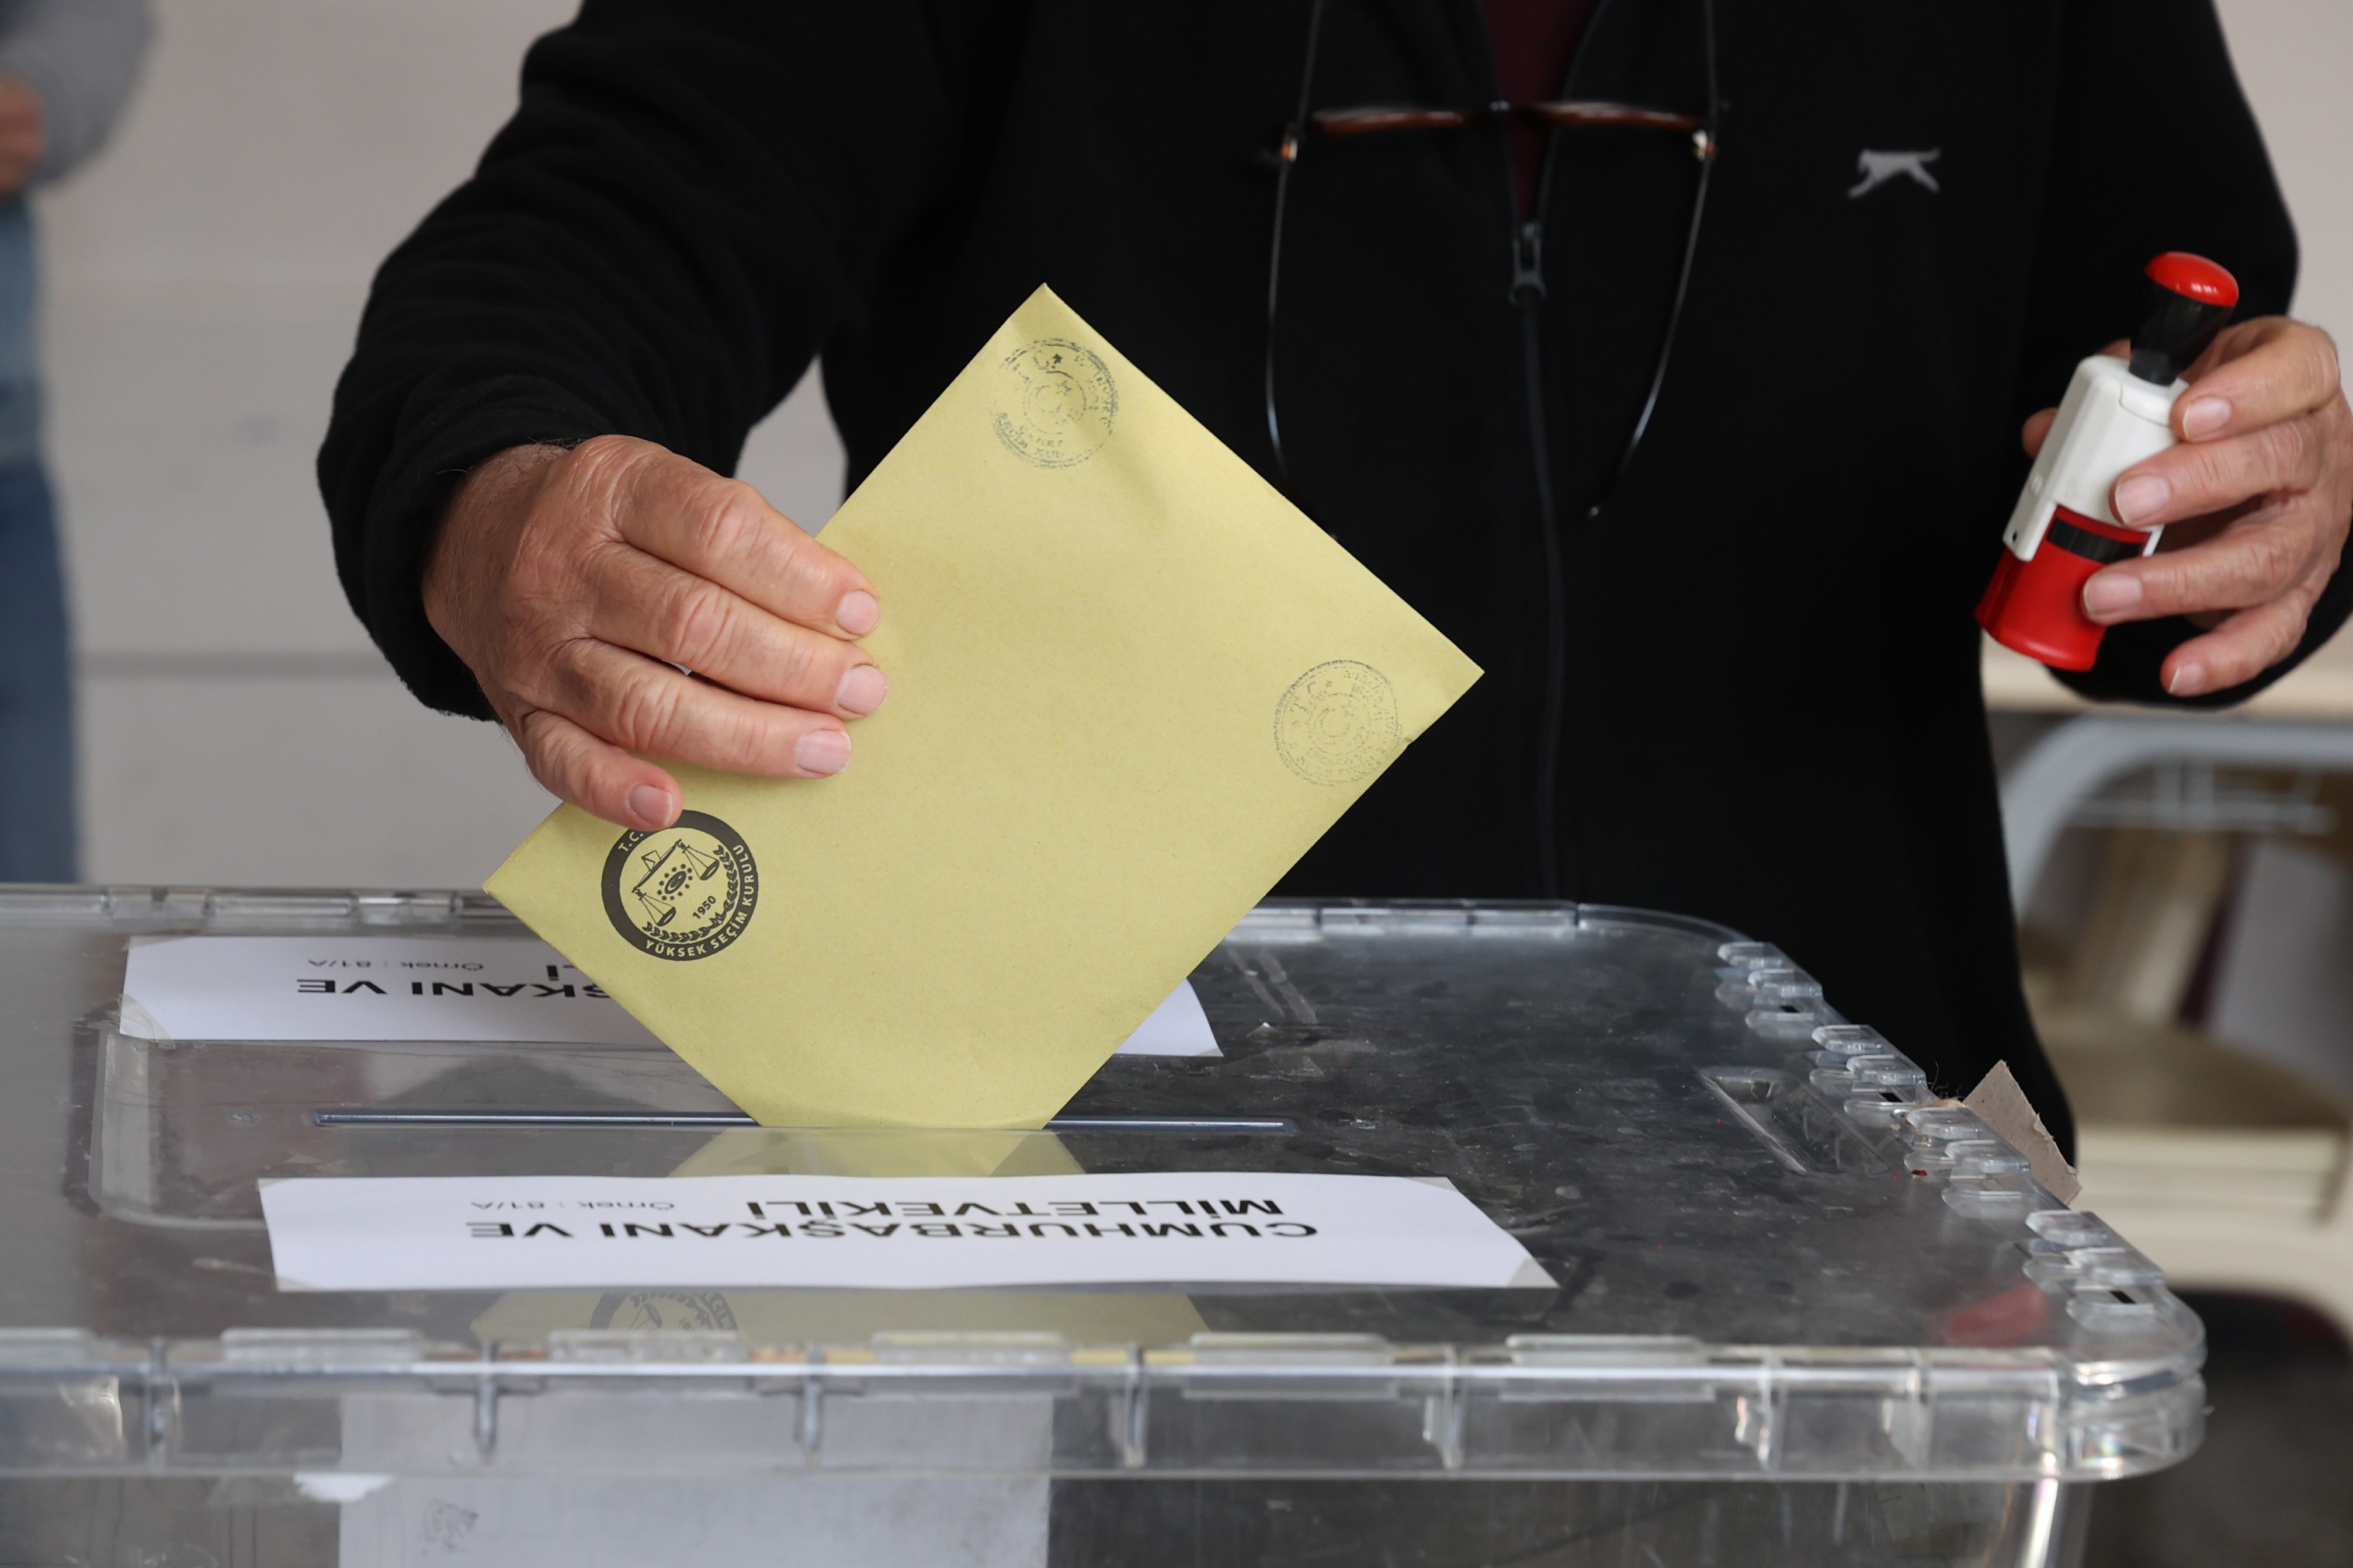 YSK yurtdışında oy verme süresini tekrar uzattı